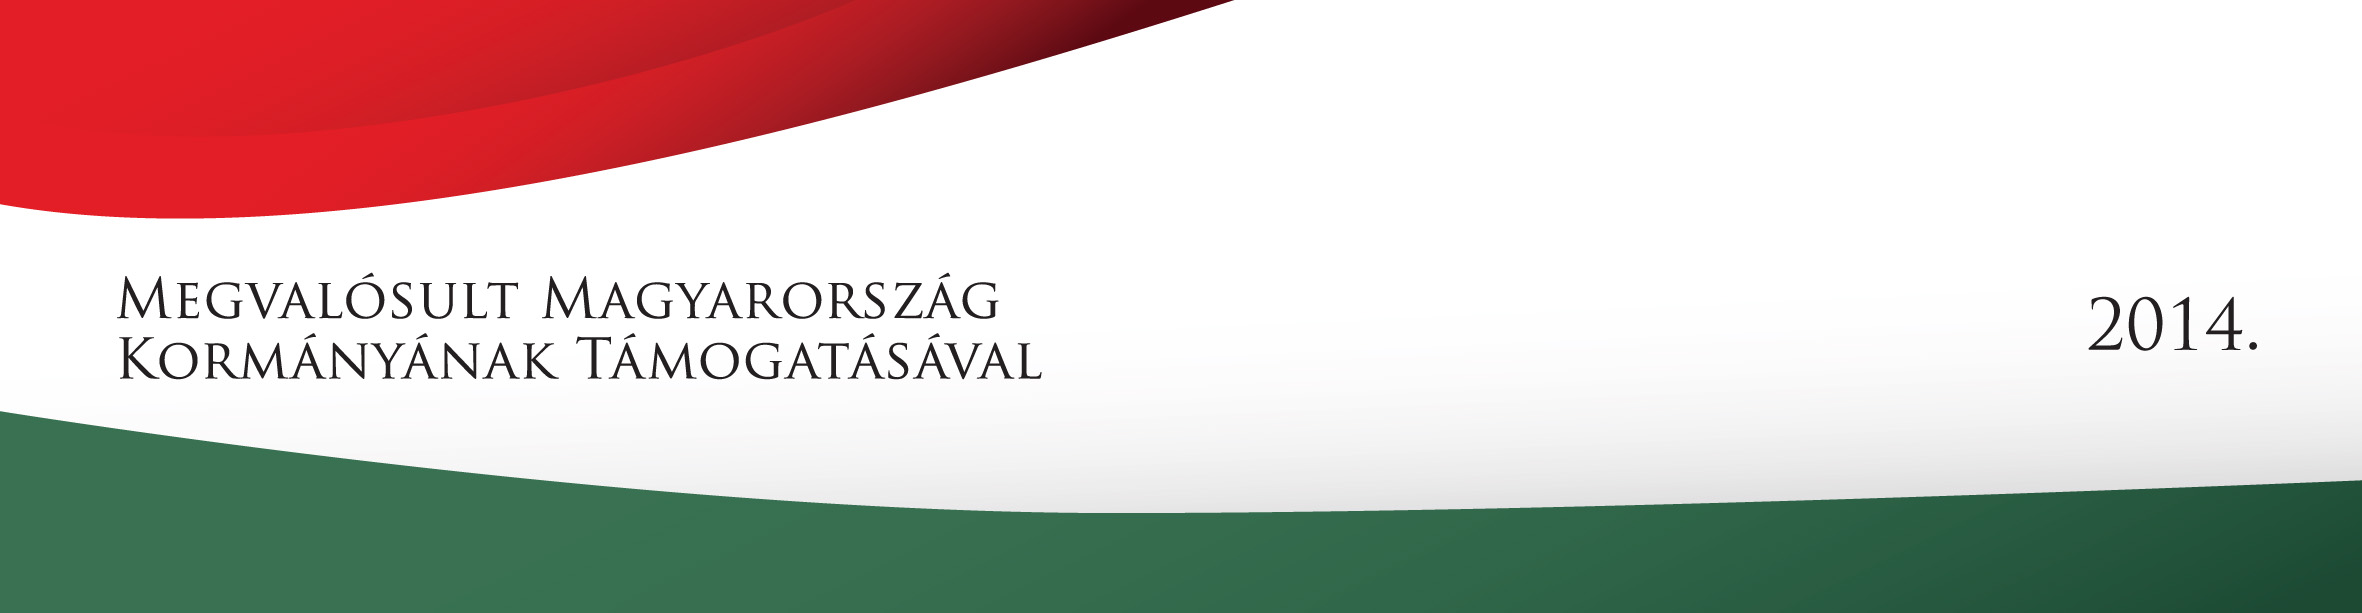 Megvalósult Magyarország Kormányának Támogatásával 2014 logó